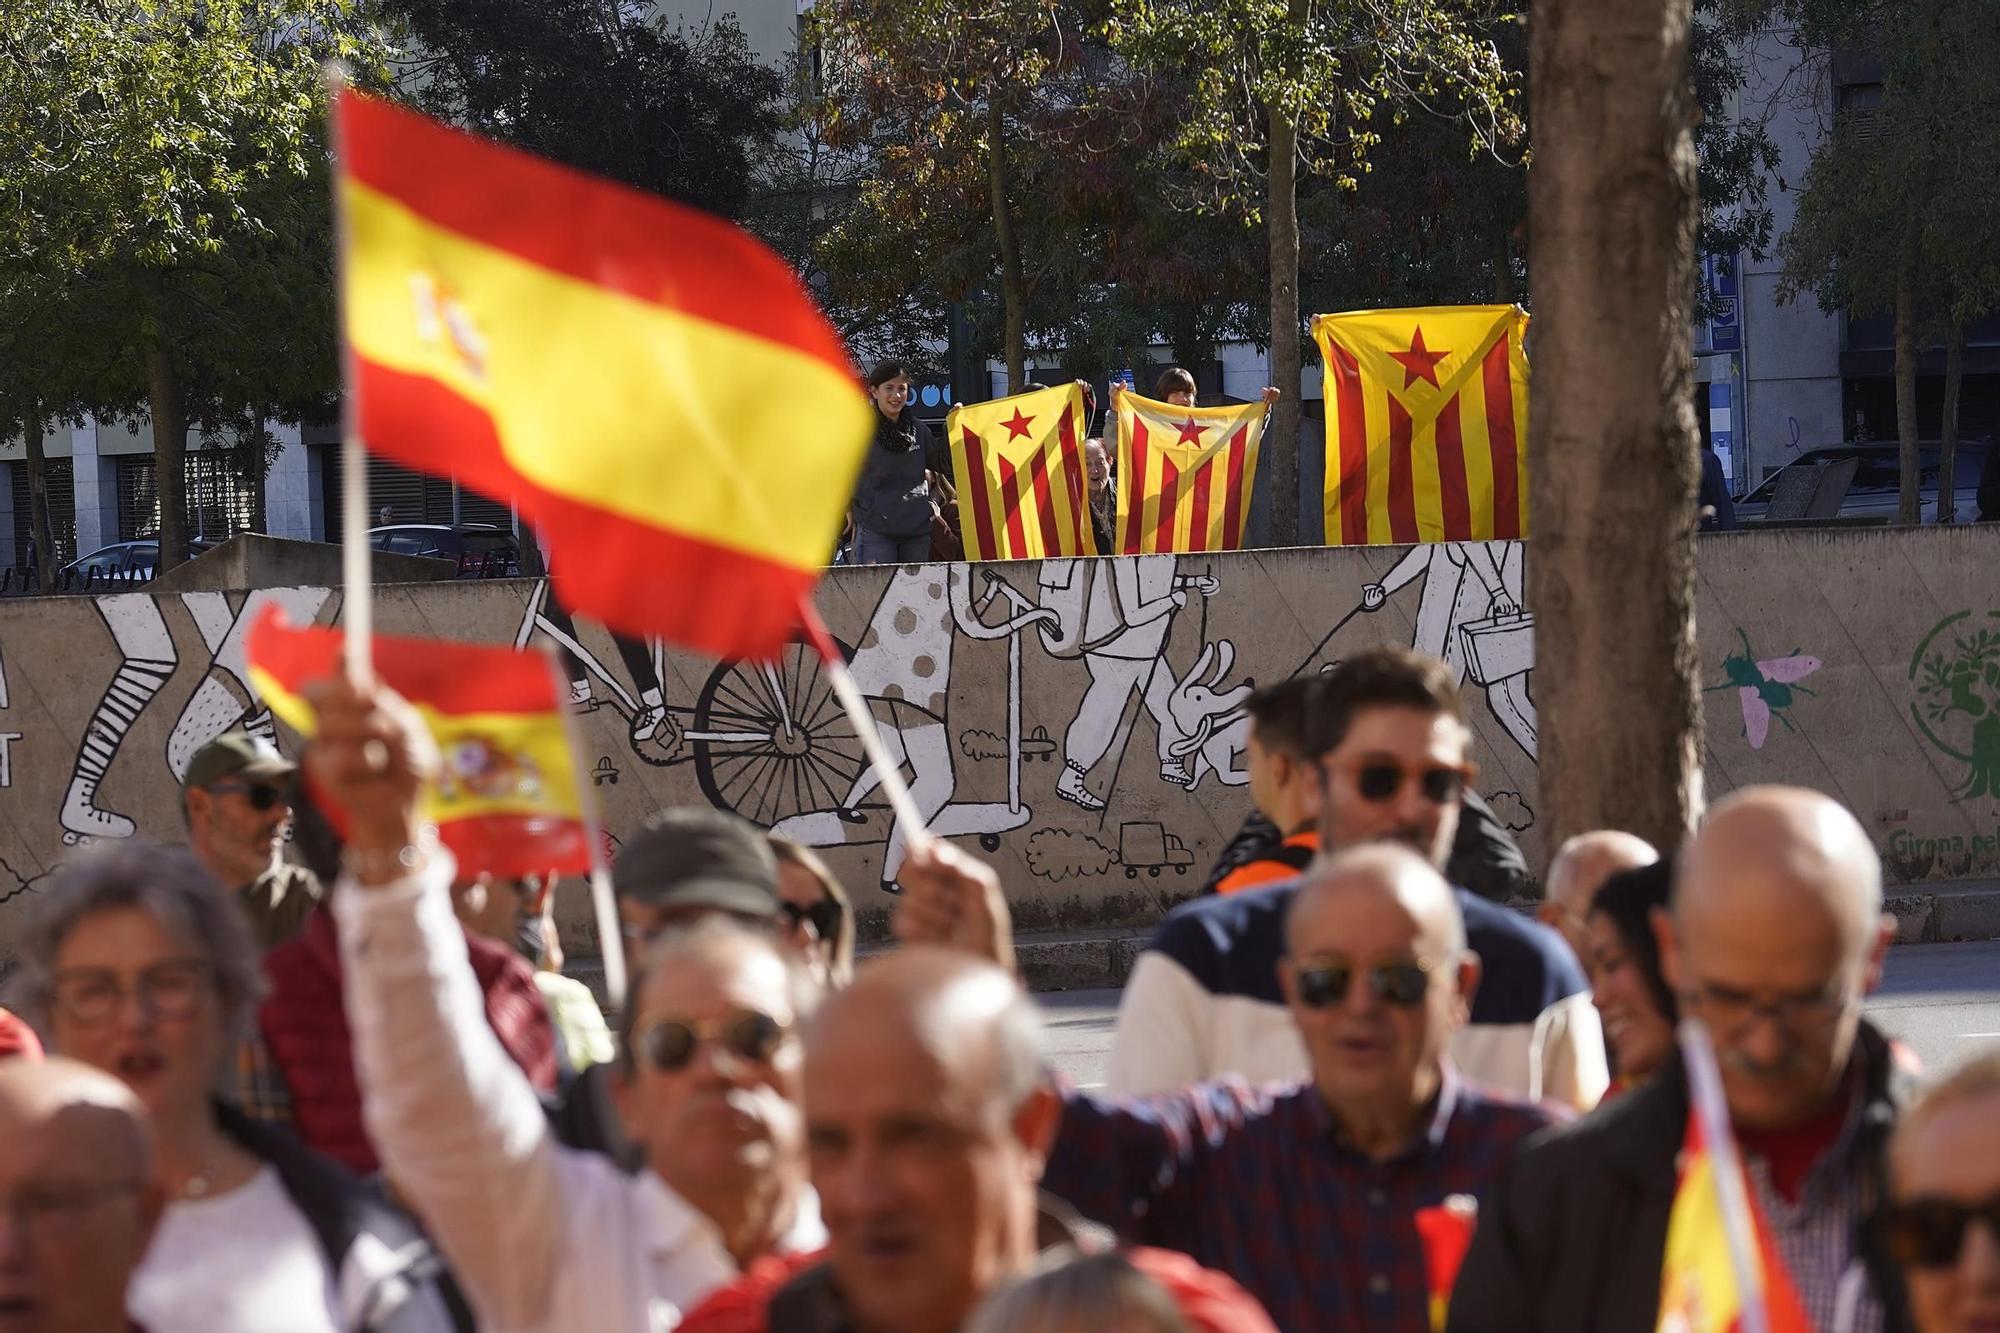 La manifestació contra l'amnistia a Girona, en fotos